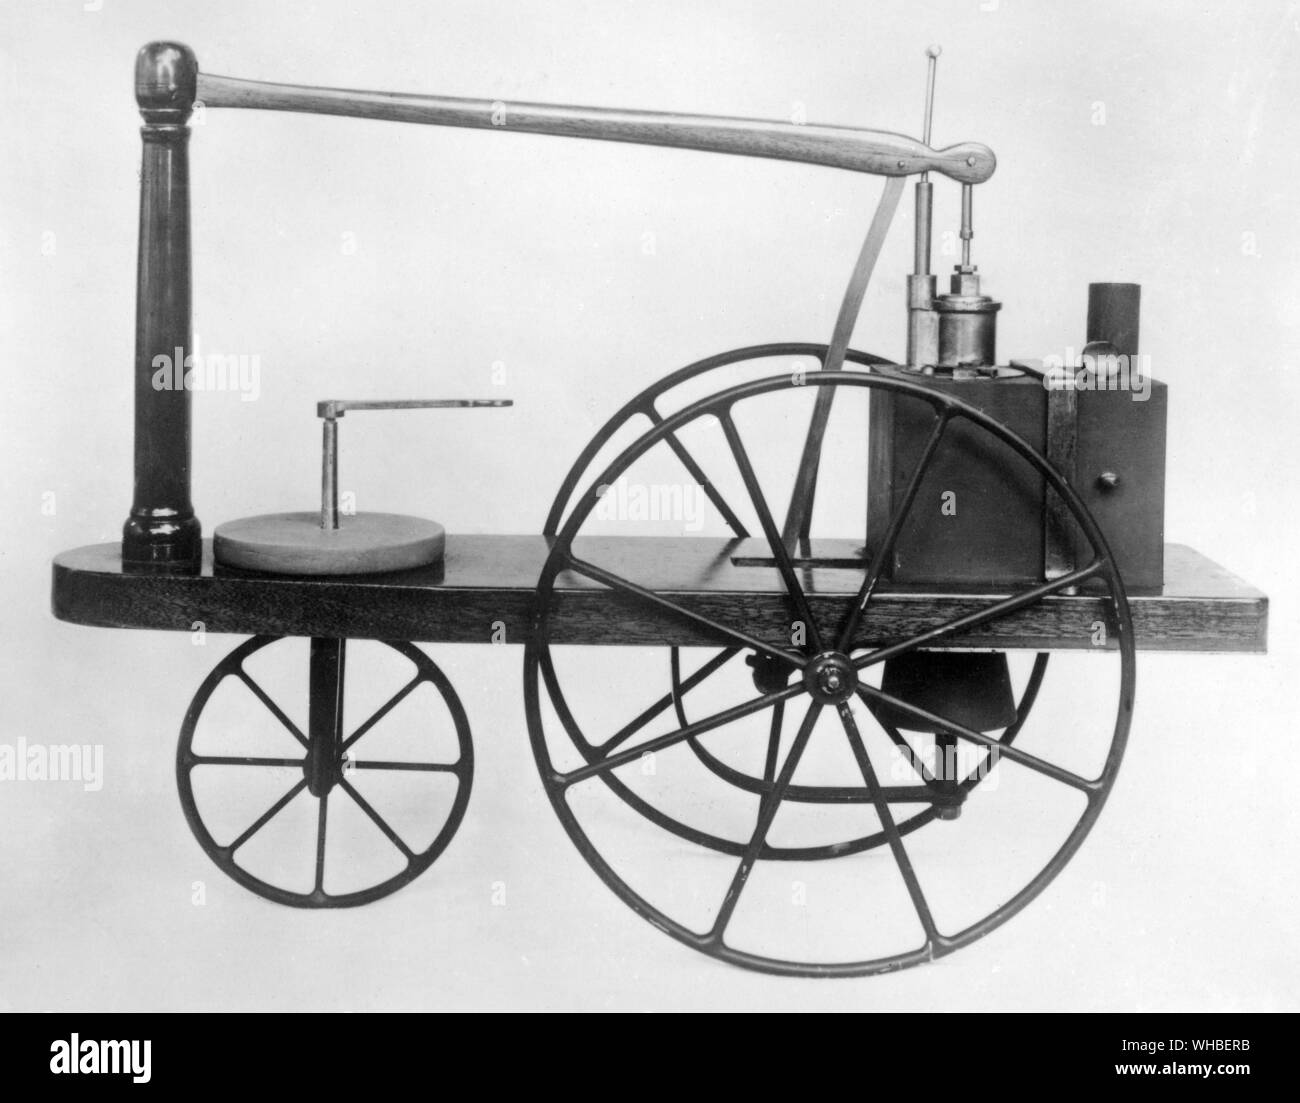 Murdock locomotiva del modello di 1784-6 di Watt 's firstdesign per un locomotore.. William Murdoch (talvolta scritto Murdock) (21 agosto 1754 - 15 novembre 1839) era un ingegnere scozzese e inventore. Si ritiene che il suo nome fu anglicizzato a Murdock quando si trasferì in Inghilterra. Egli è stato impiegato dalla ditta di Boulton e Watt e ha lavorato per loro in Cornovaglia come un motore a vapore erettore per dieci anni, trascorrendo la maggior parte del resto della sua vita in Birmingham. Egli fu l'inventore di illuminazione a gas nei primi 1790s e ha coniato il termine gasometro. Egli ha inoltre realizzato una serie di innovazioni per il motore di vapore, Foto Stock